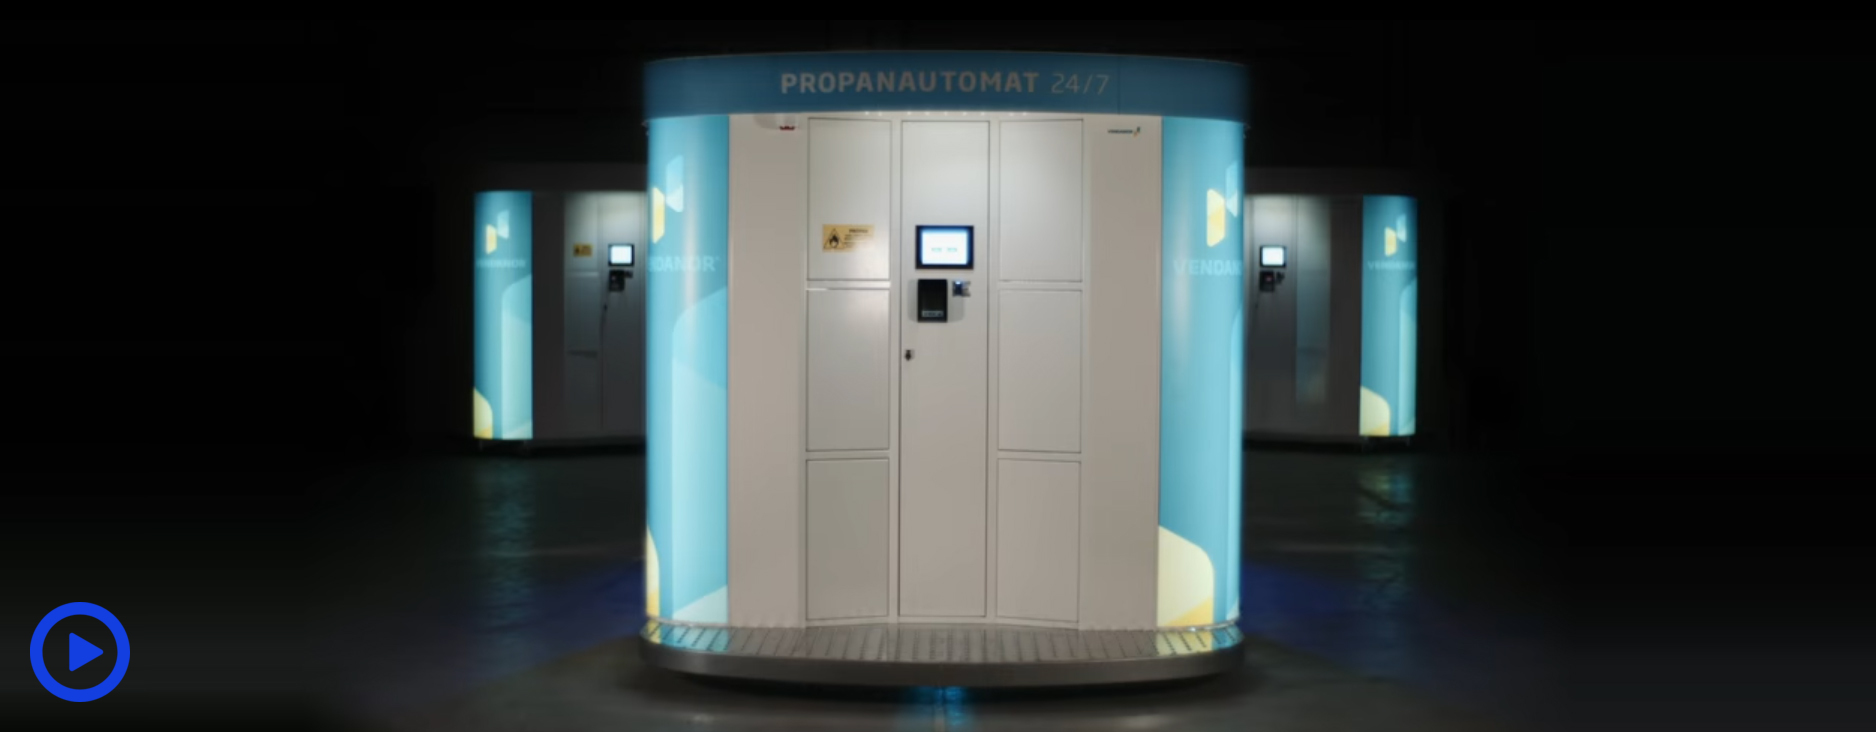 導入事例3 プロパンガス自動販売機